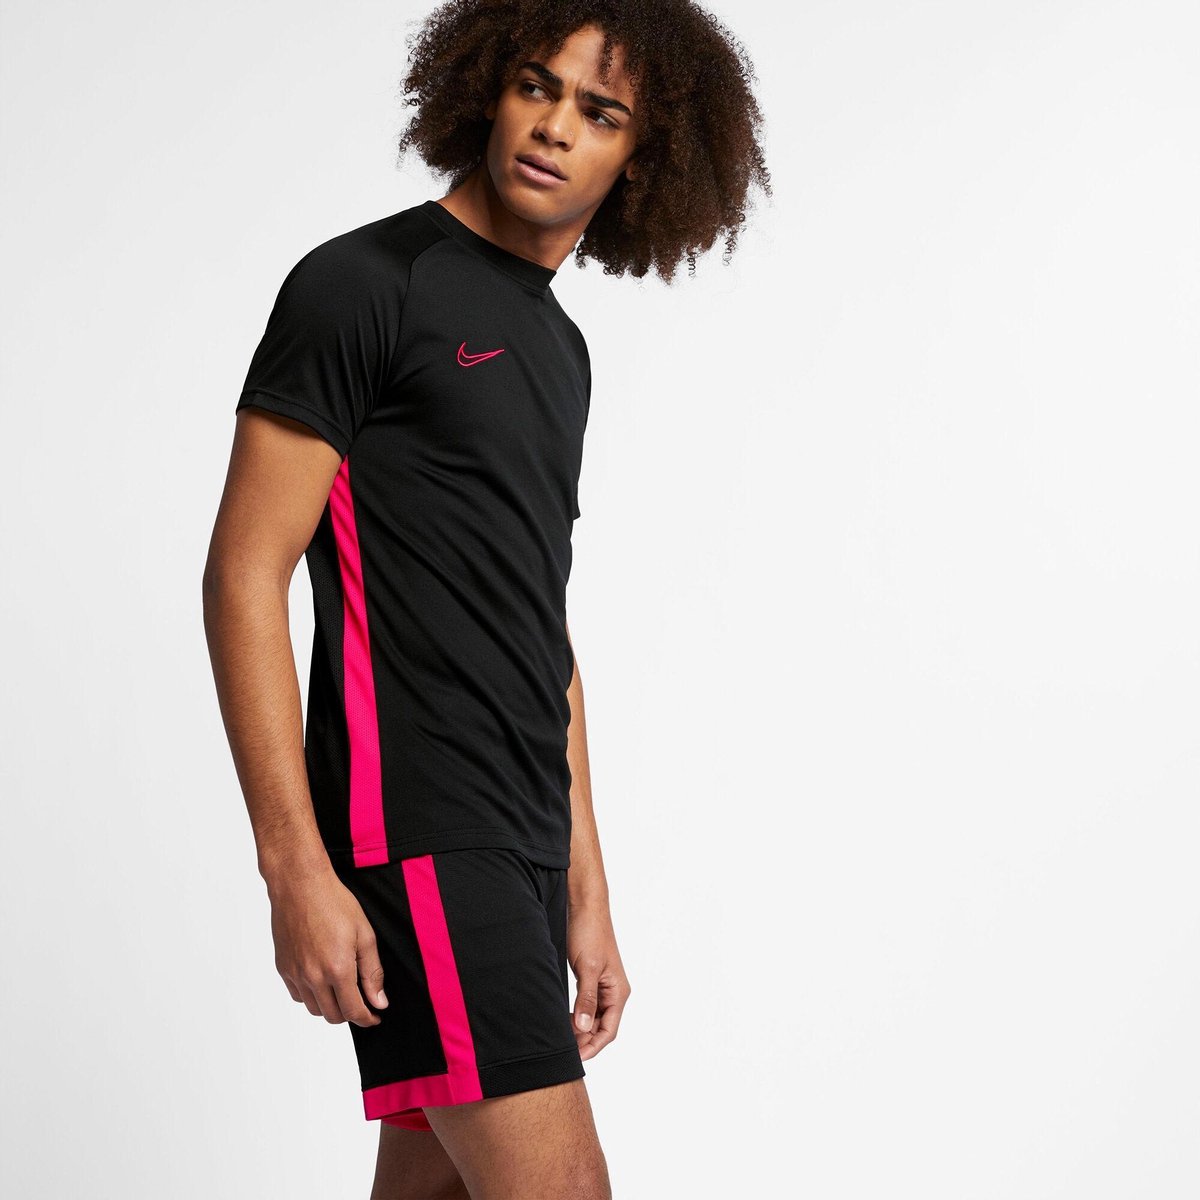 Nike Dry Academy voetbalshirt heren zwart/roze | bol.com